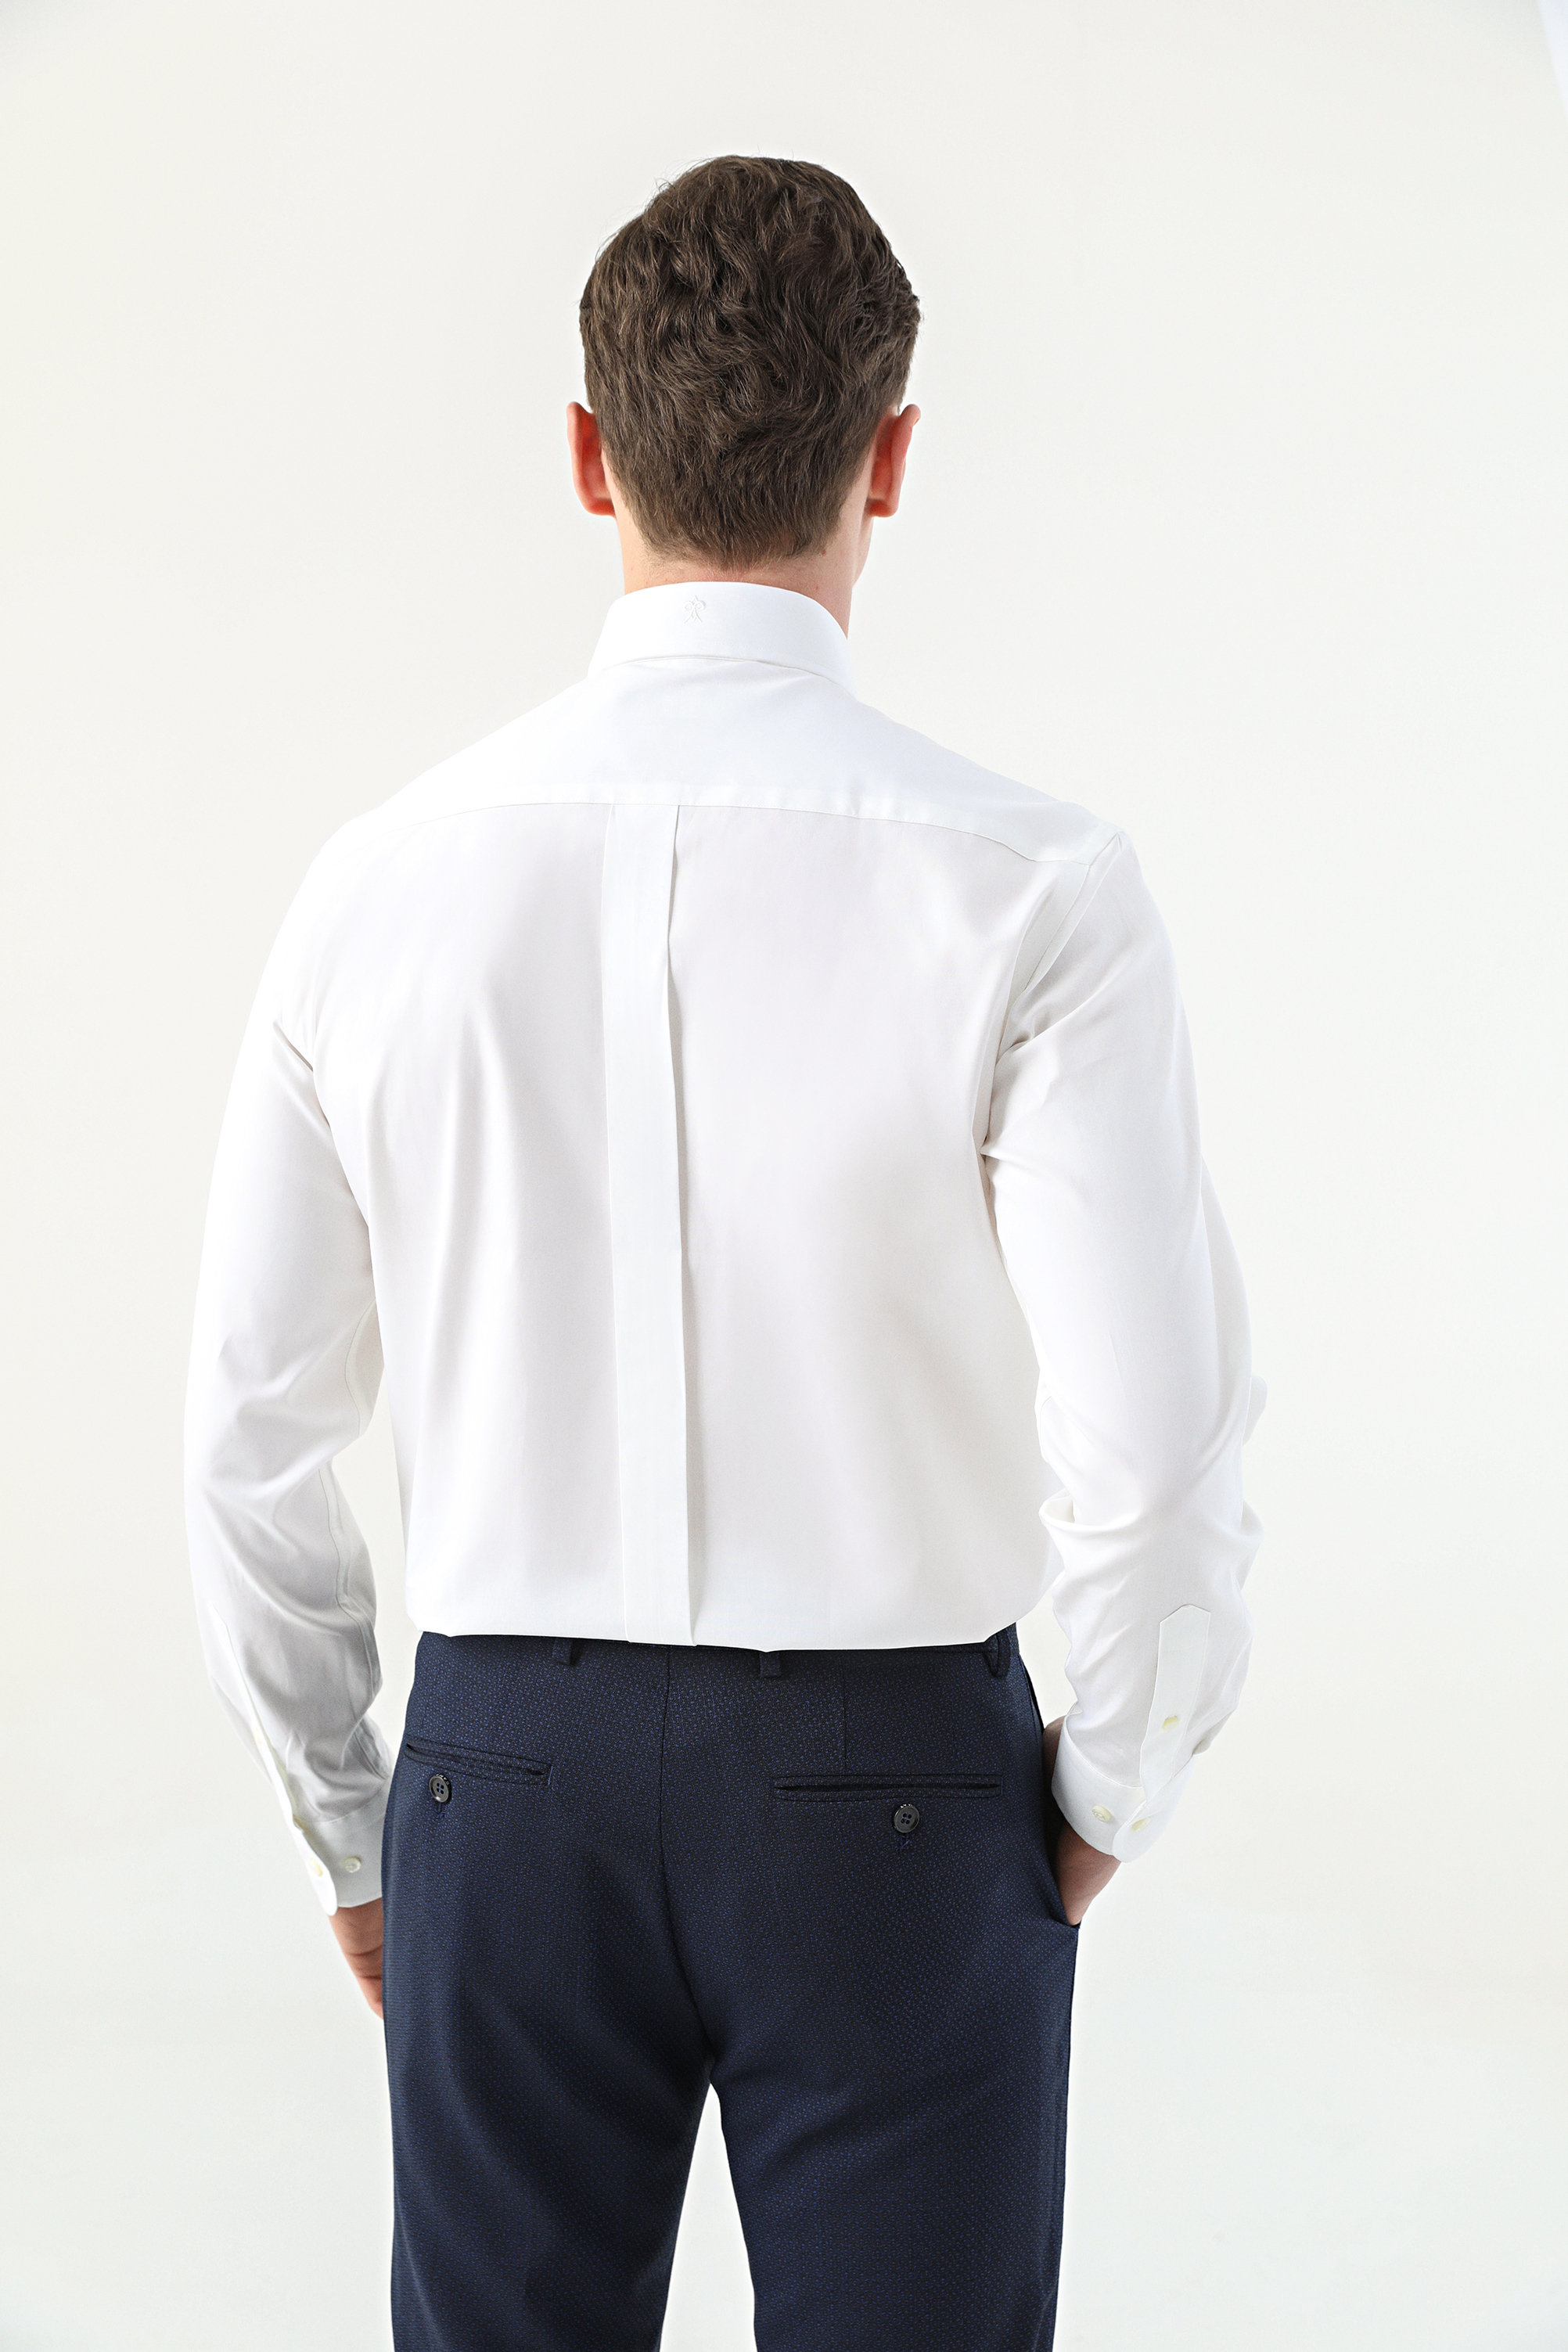 Damat Tween Damat Comfort Beyaz Düz Nano Care Gömlek. 4